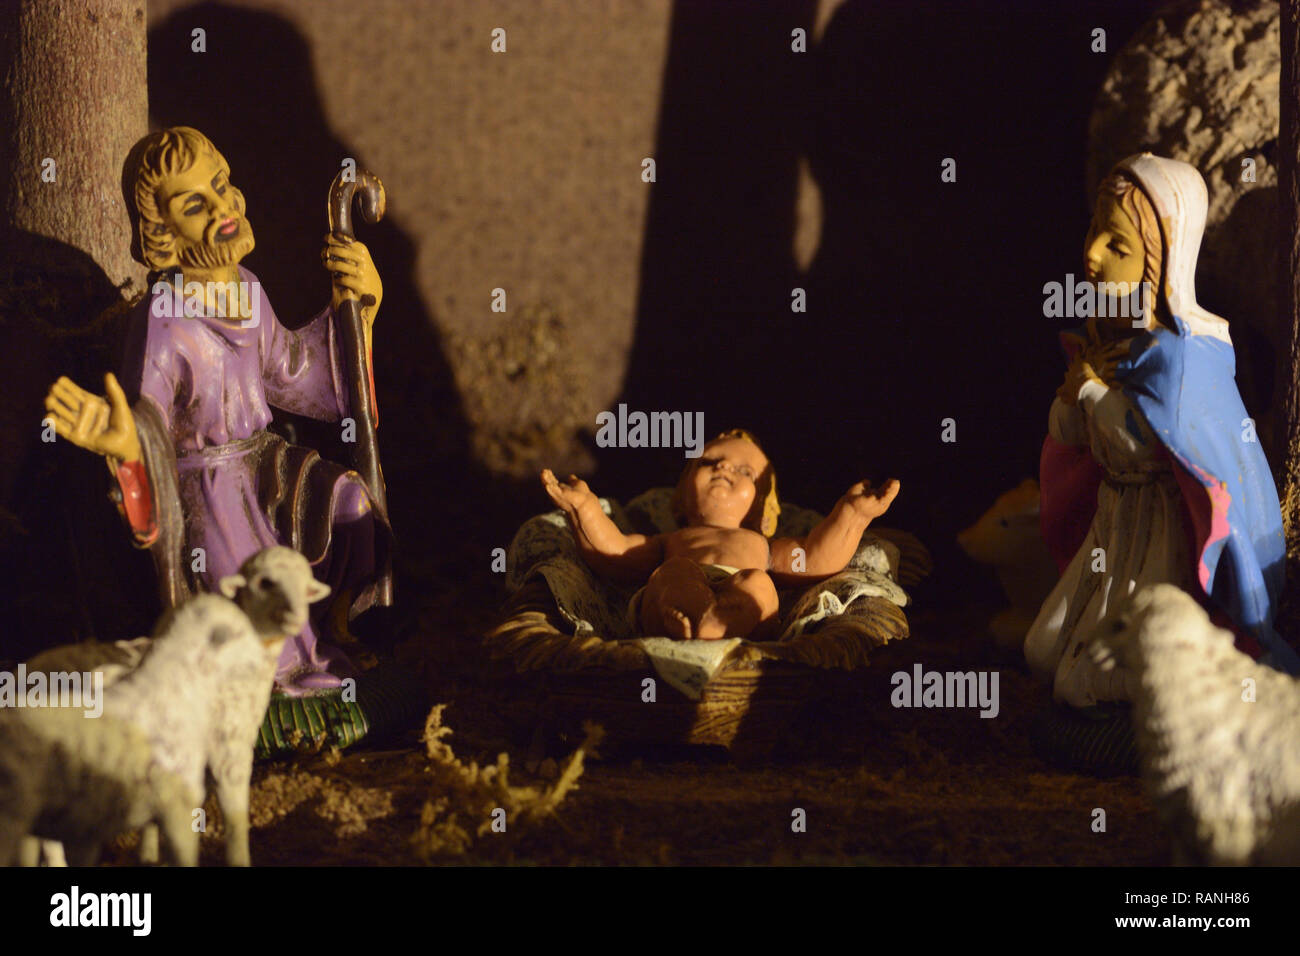 Scène de la nativité dans la tradition italienne. Scène de la nativité avec des statues de Joseph, Marie et le petit Jésus Banque D'Images